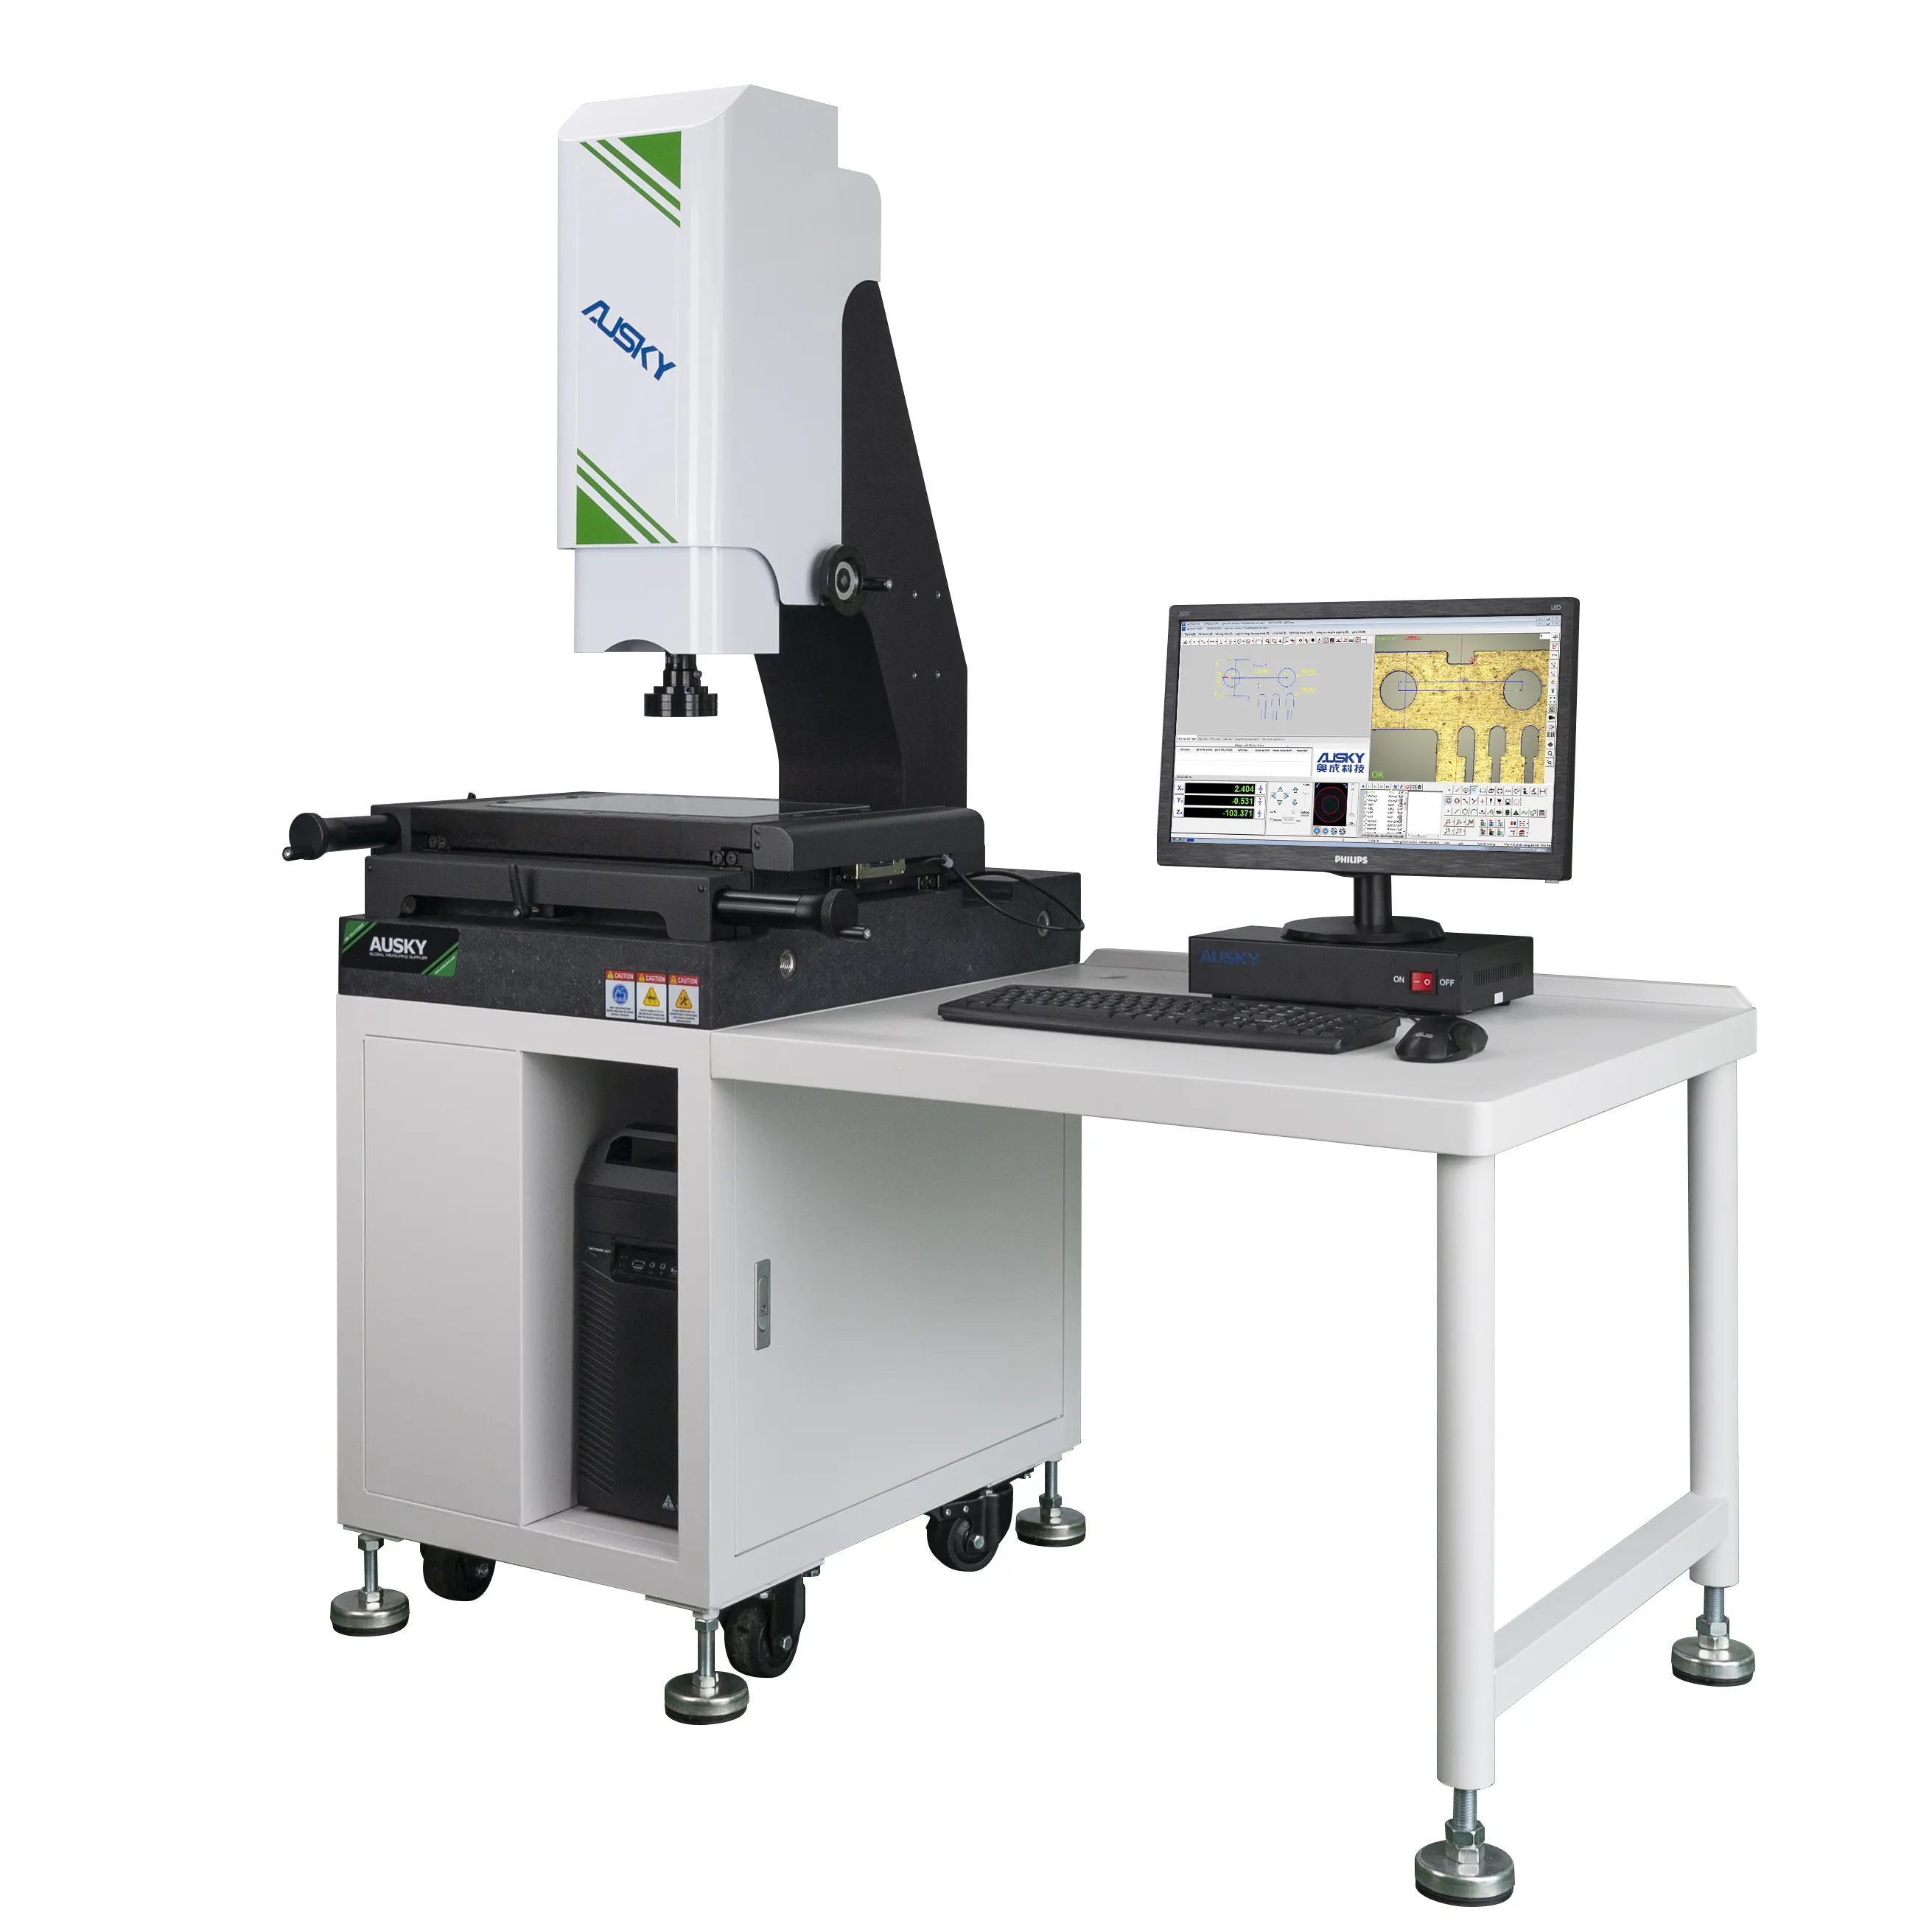 Le apparecchiature di misurazione della proiezione microscopica di vendita diretta in fabbrica sono stabili, durevoli e accurate